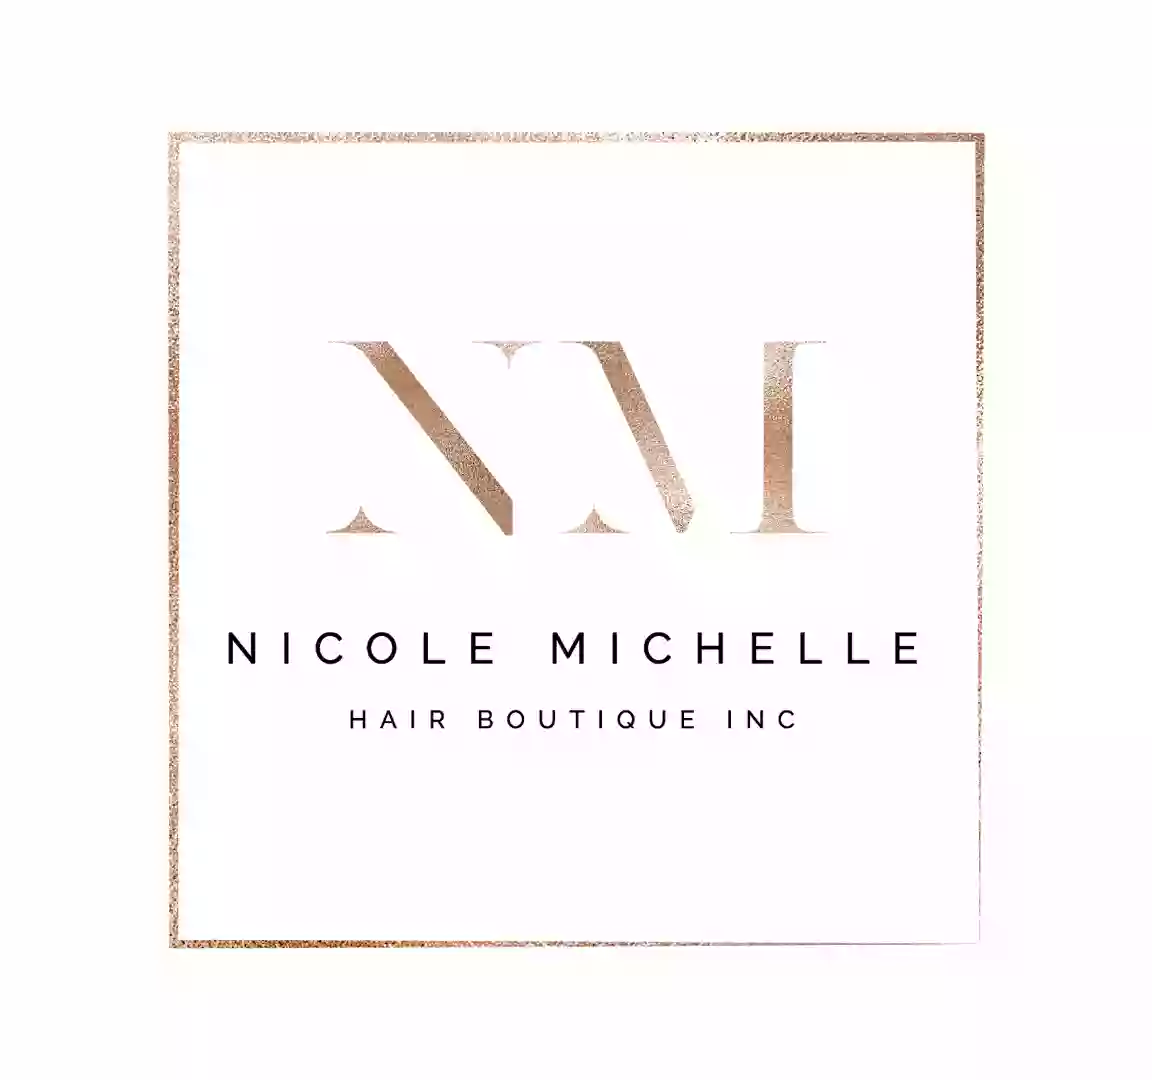 Nicole Michelle Hair Boutique Inc